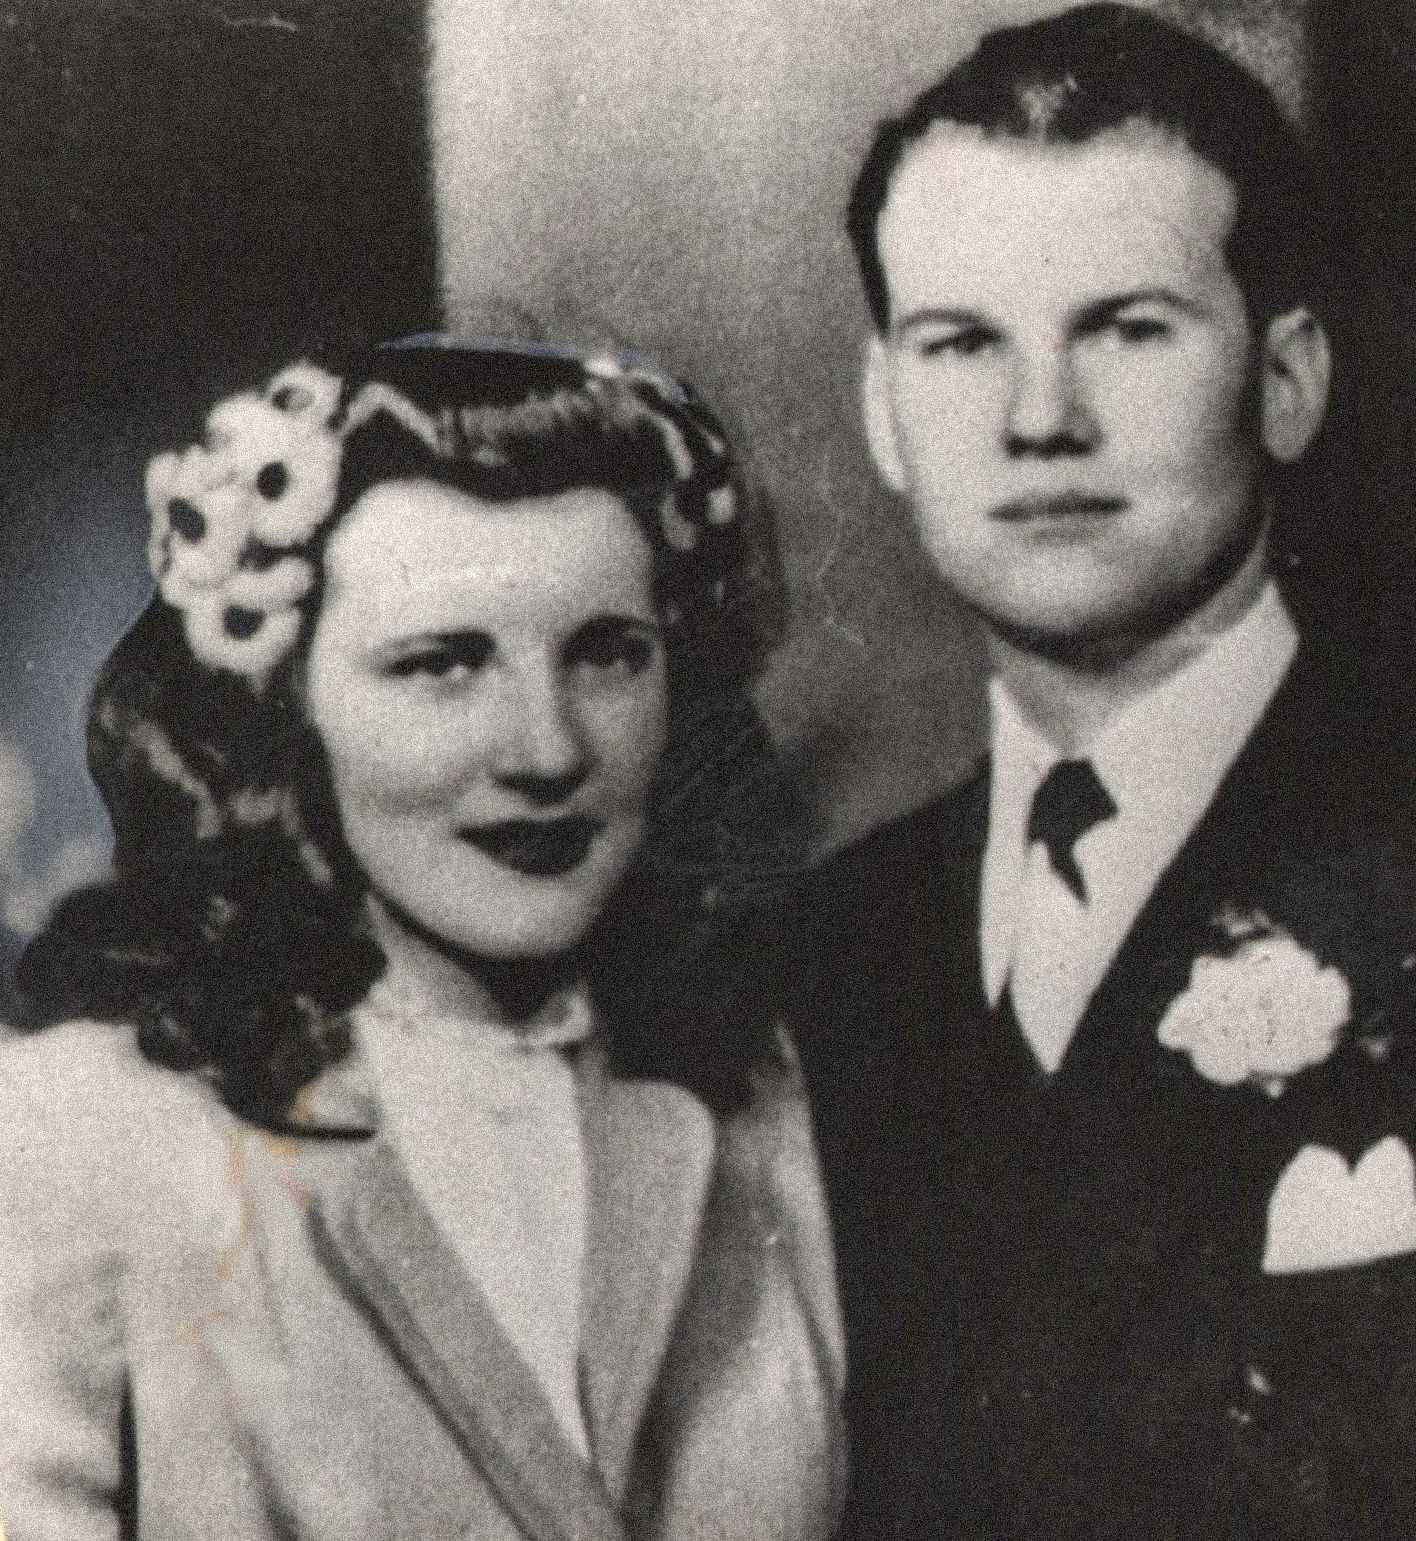 Sur la photo, Sam et Marilyn Sheppard, un jeune couple apparemment heureux. Les deux se sont mariés le 21 février 1945 et ont eu un enfant ensemble, Sam Reese Sheppard. Marilyn était enceinte de son deuxième enfant au moment de son meurtre.